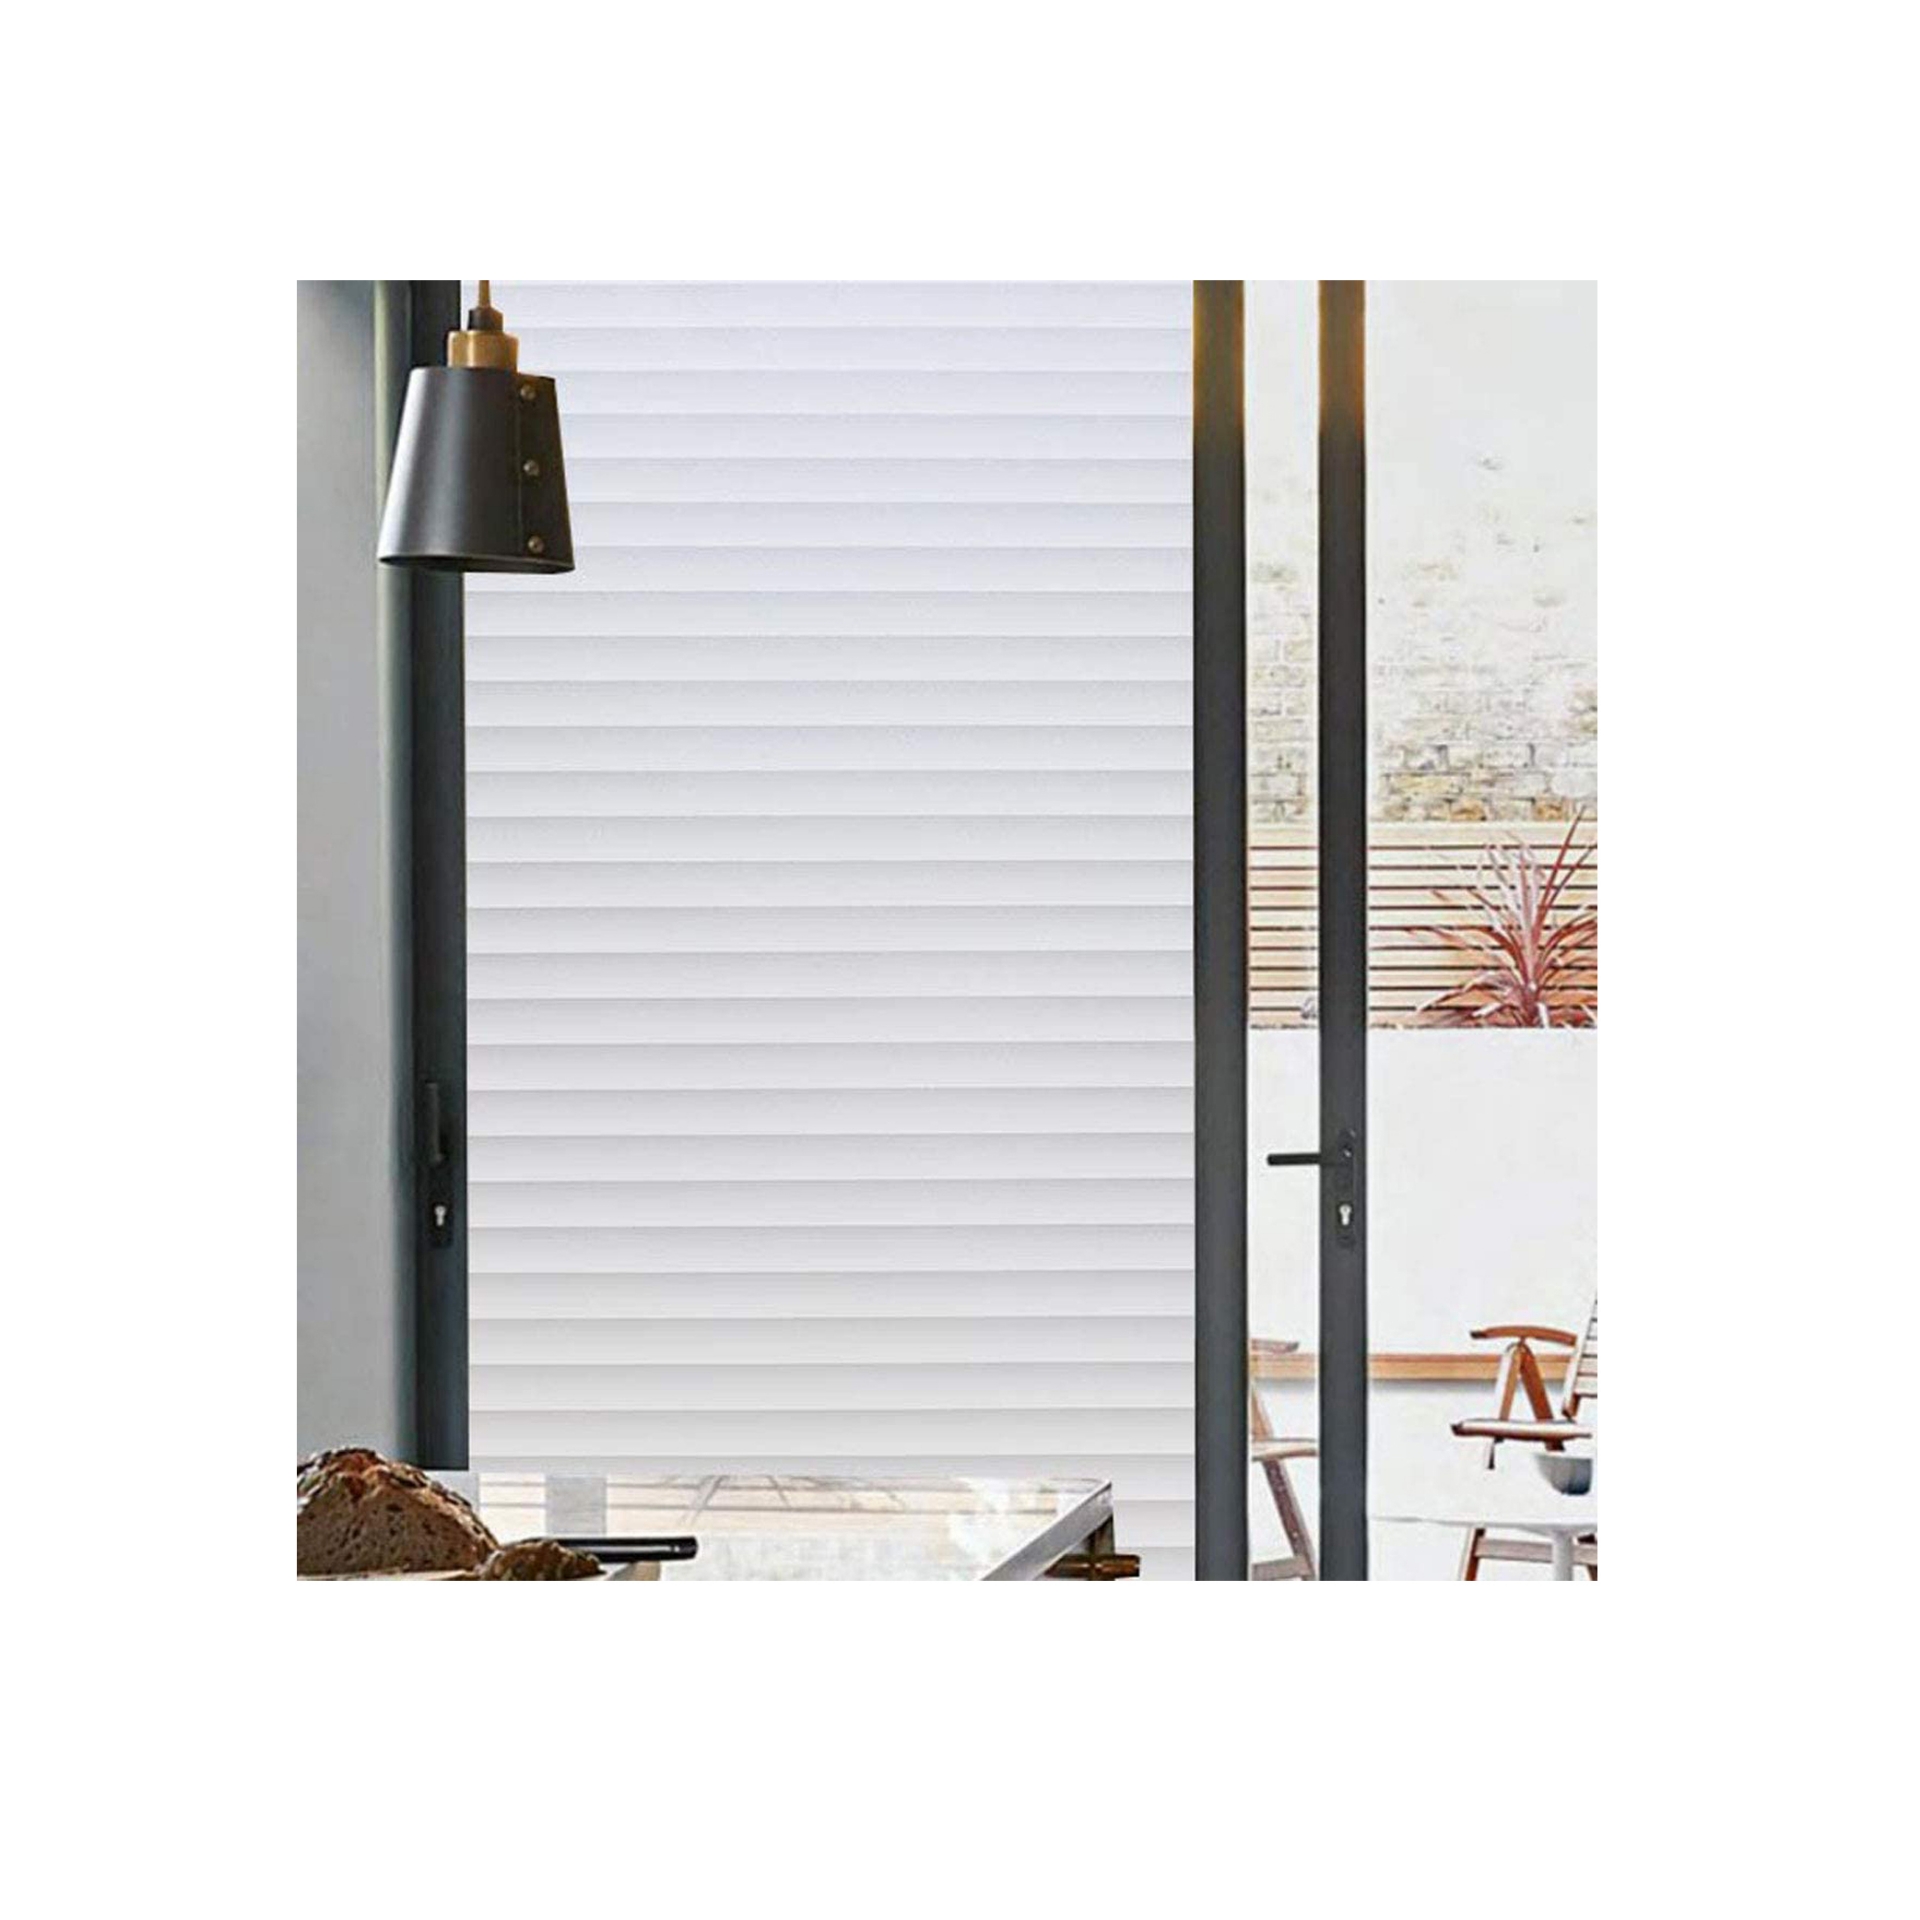 غطاء نافذة لحماية الخصوصية من بلوس، غالق صناعي لغطاء النافذة لحماية الخصوصية مضاد للاشعة فوق البنفسجية بدون صمغ ثابت، 17.7× 78.7 بوصة